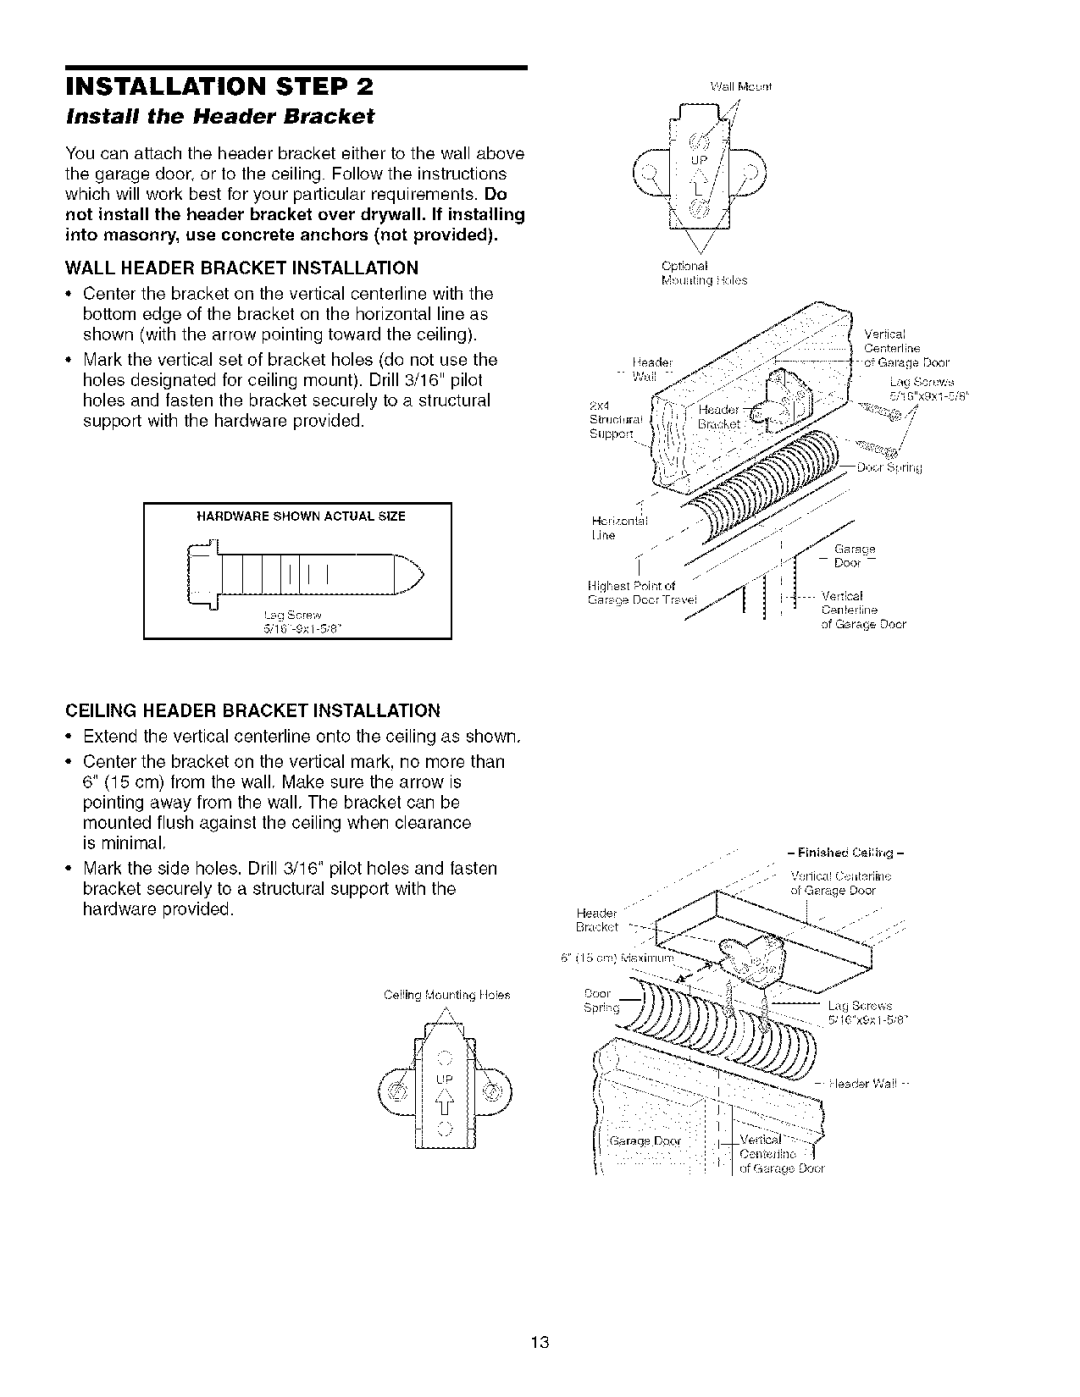 Sears 139.53930D Install the Header Bracket, Wall Header Bracket Installation, Ceiling Header Bracket Installation 